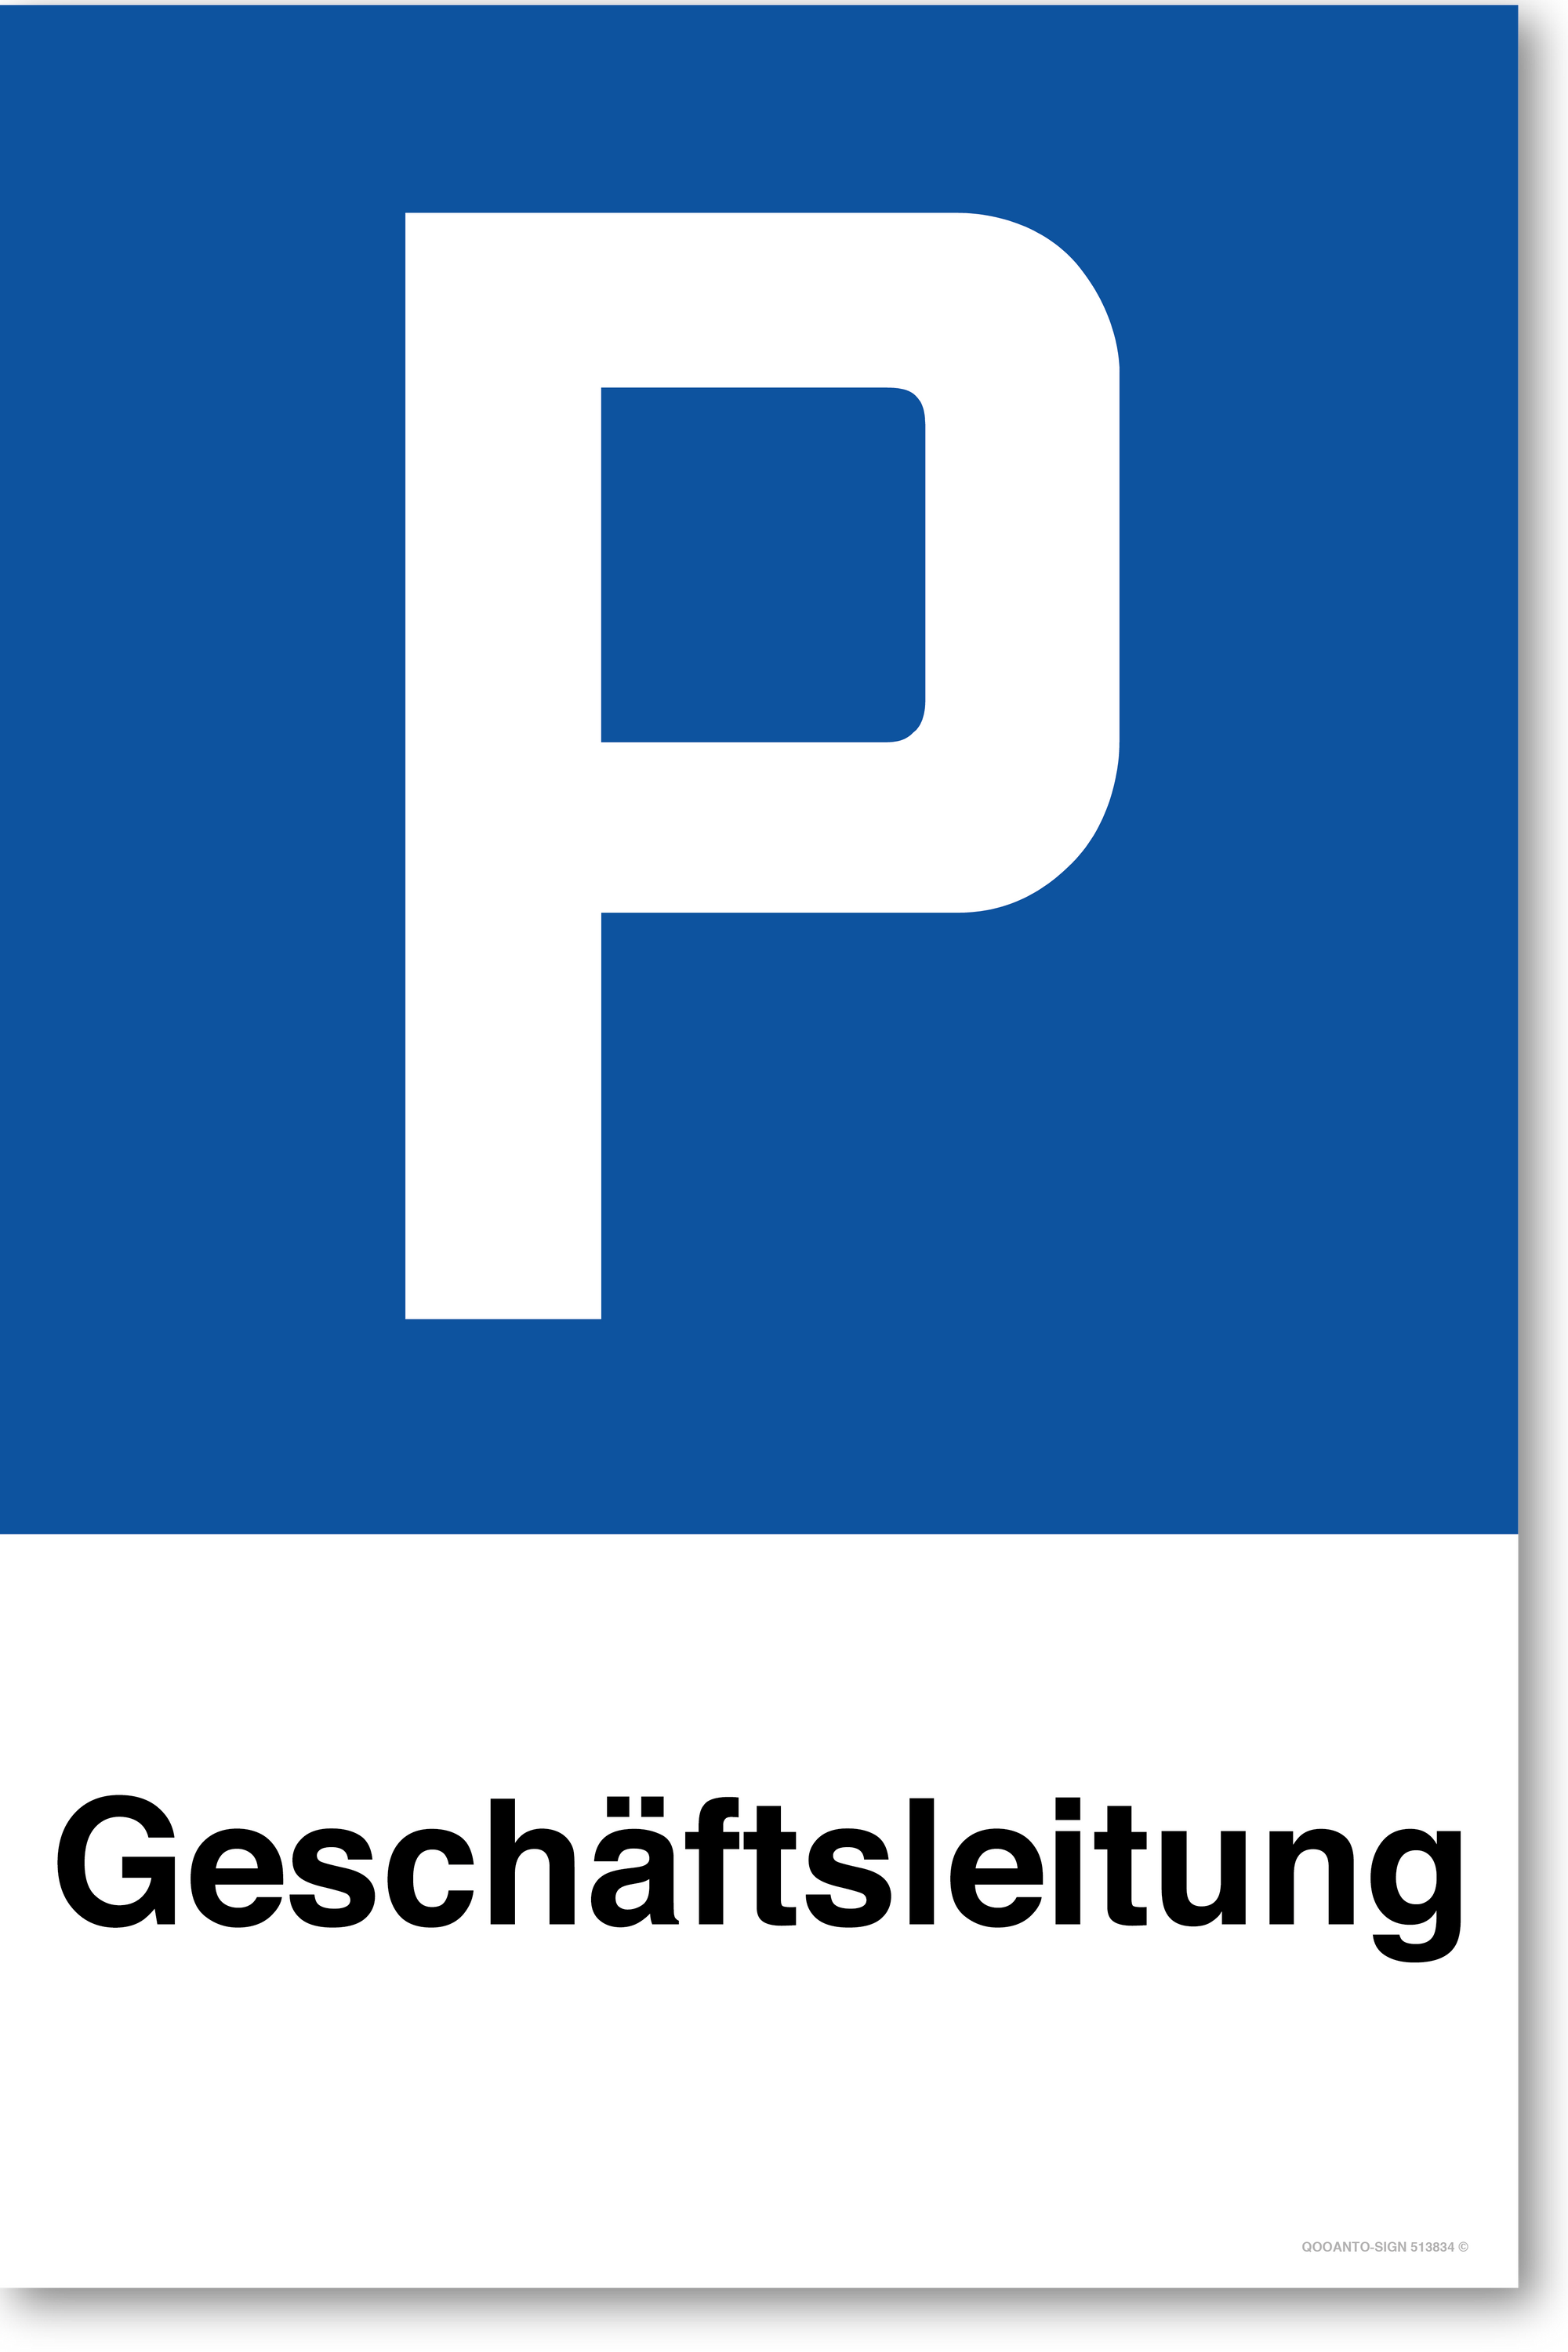 Geschäftsleitung - Parkplatzschild hochformat